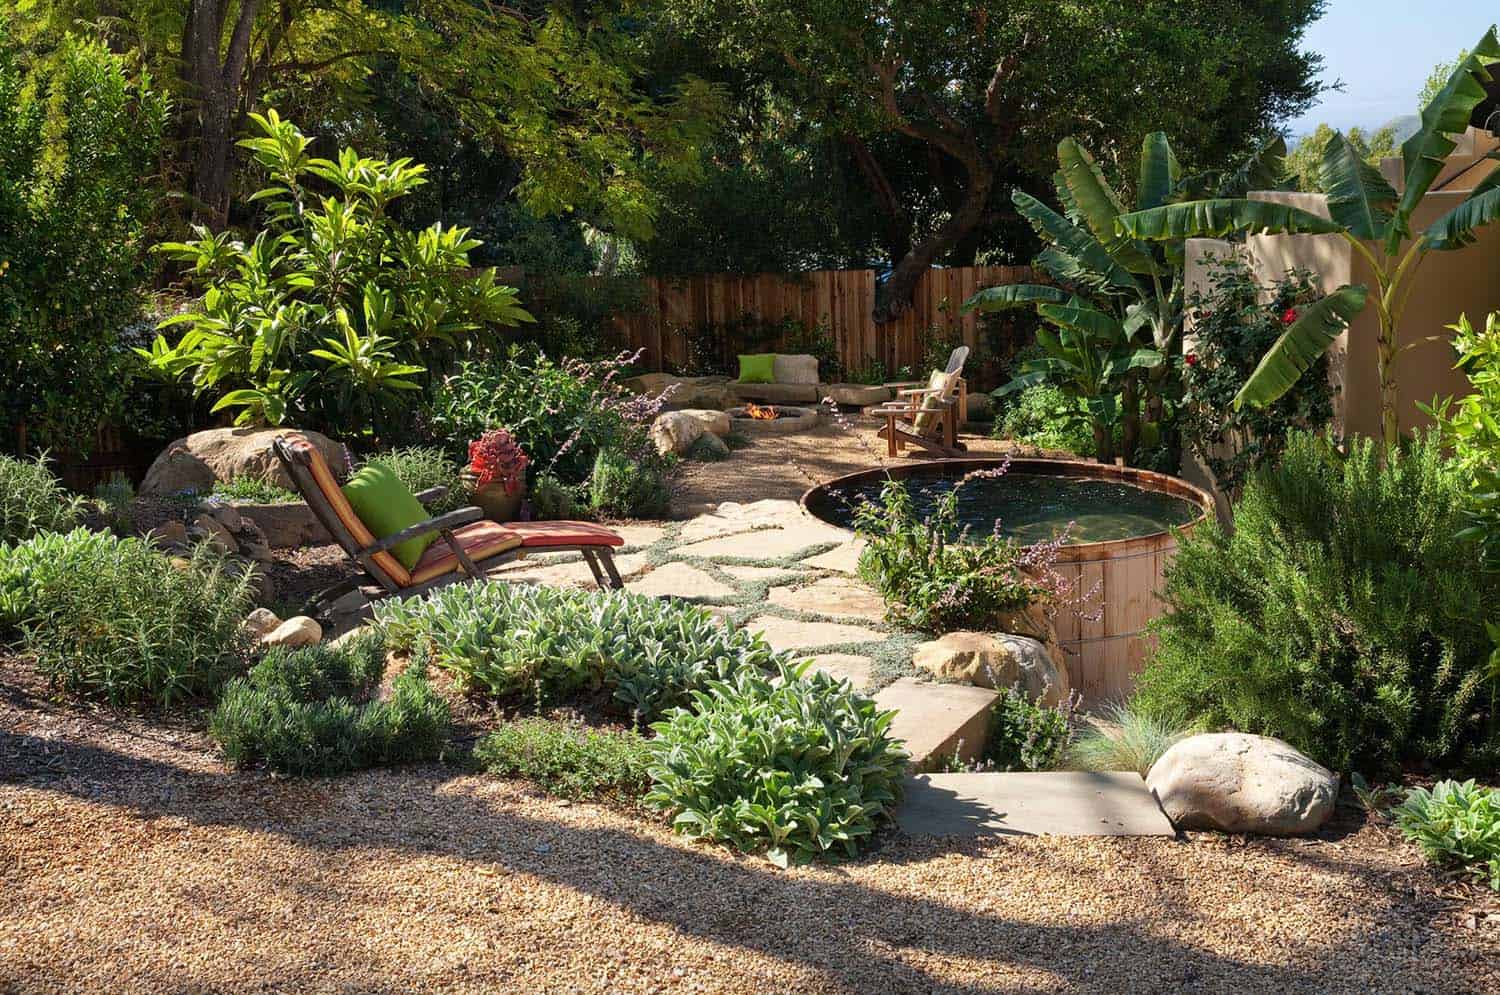 Hot Tub Ideas To Create A Backyard Oasis, Hot Tub Landscape Ideas